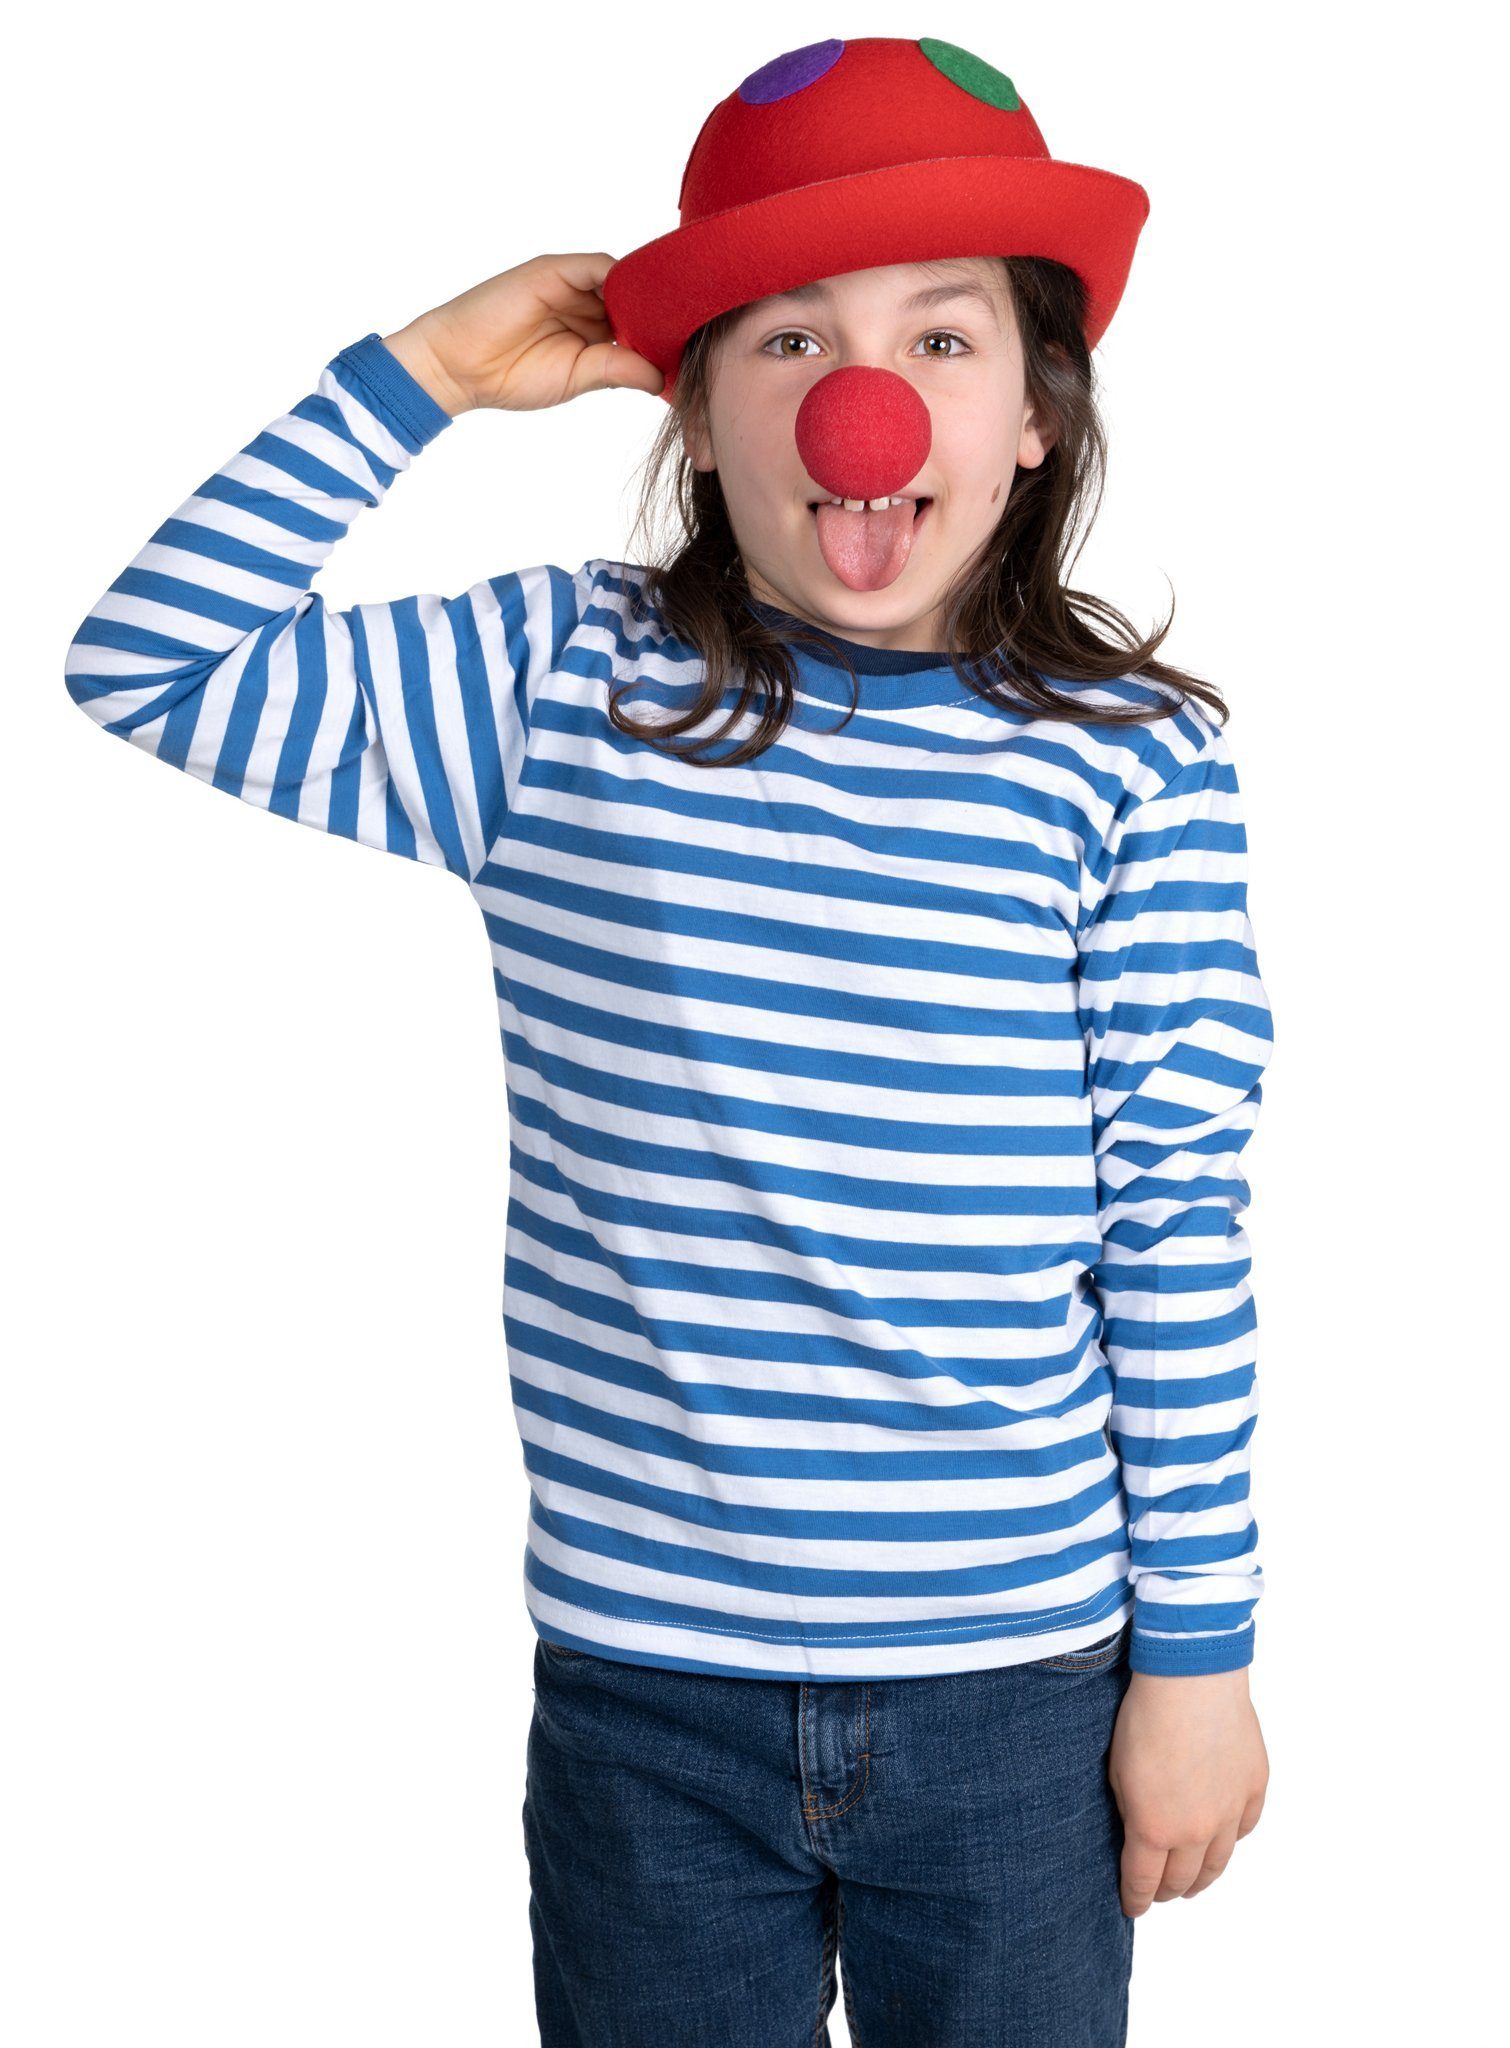 Metamorph Kostüm Clownskostüm für Kinder mit blauem Ringelshirt, Cl, Lustiges, unkompliziertes Clownskostüm für Mädchen und Jungen!